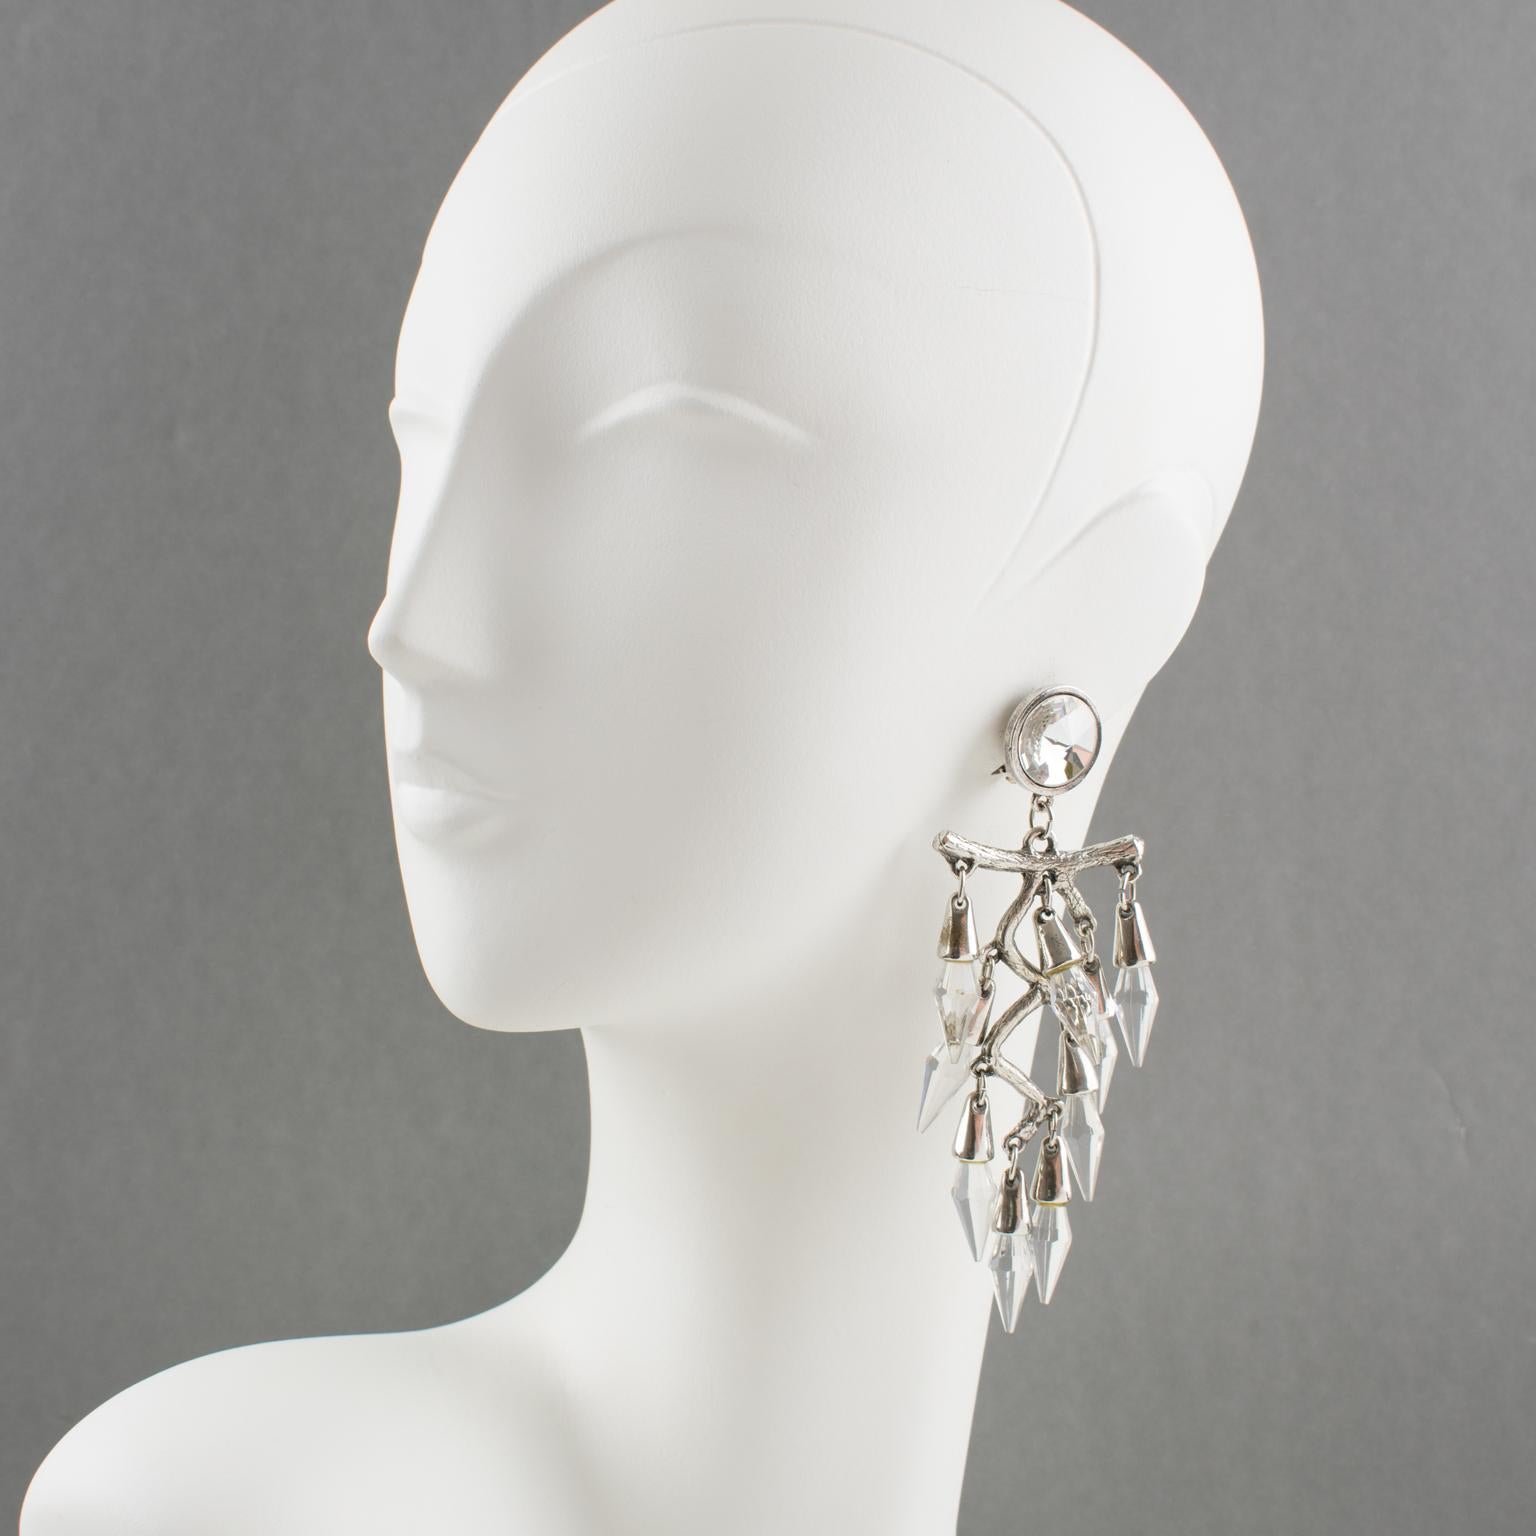 Diese hübschen, übergroßen Kronleuchter-Clip-Ohrringe haben ein romantisches Design in Form eines Bügels und eines großen stilisierten Zweigs aus Silberblech, der von facettierten Kristallperlen eingerahmt wird. Es gibt keine sichtbare